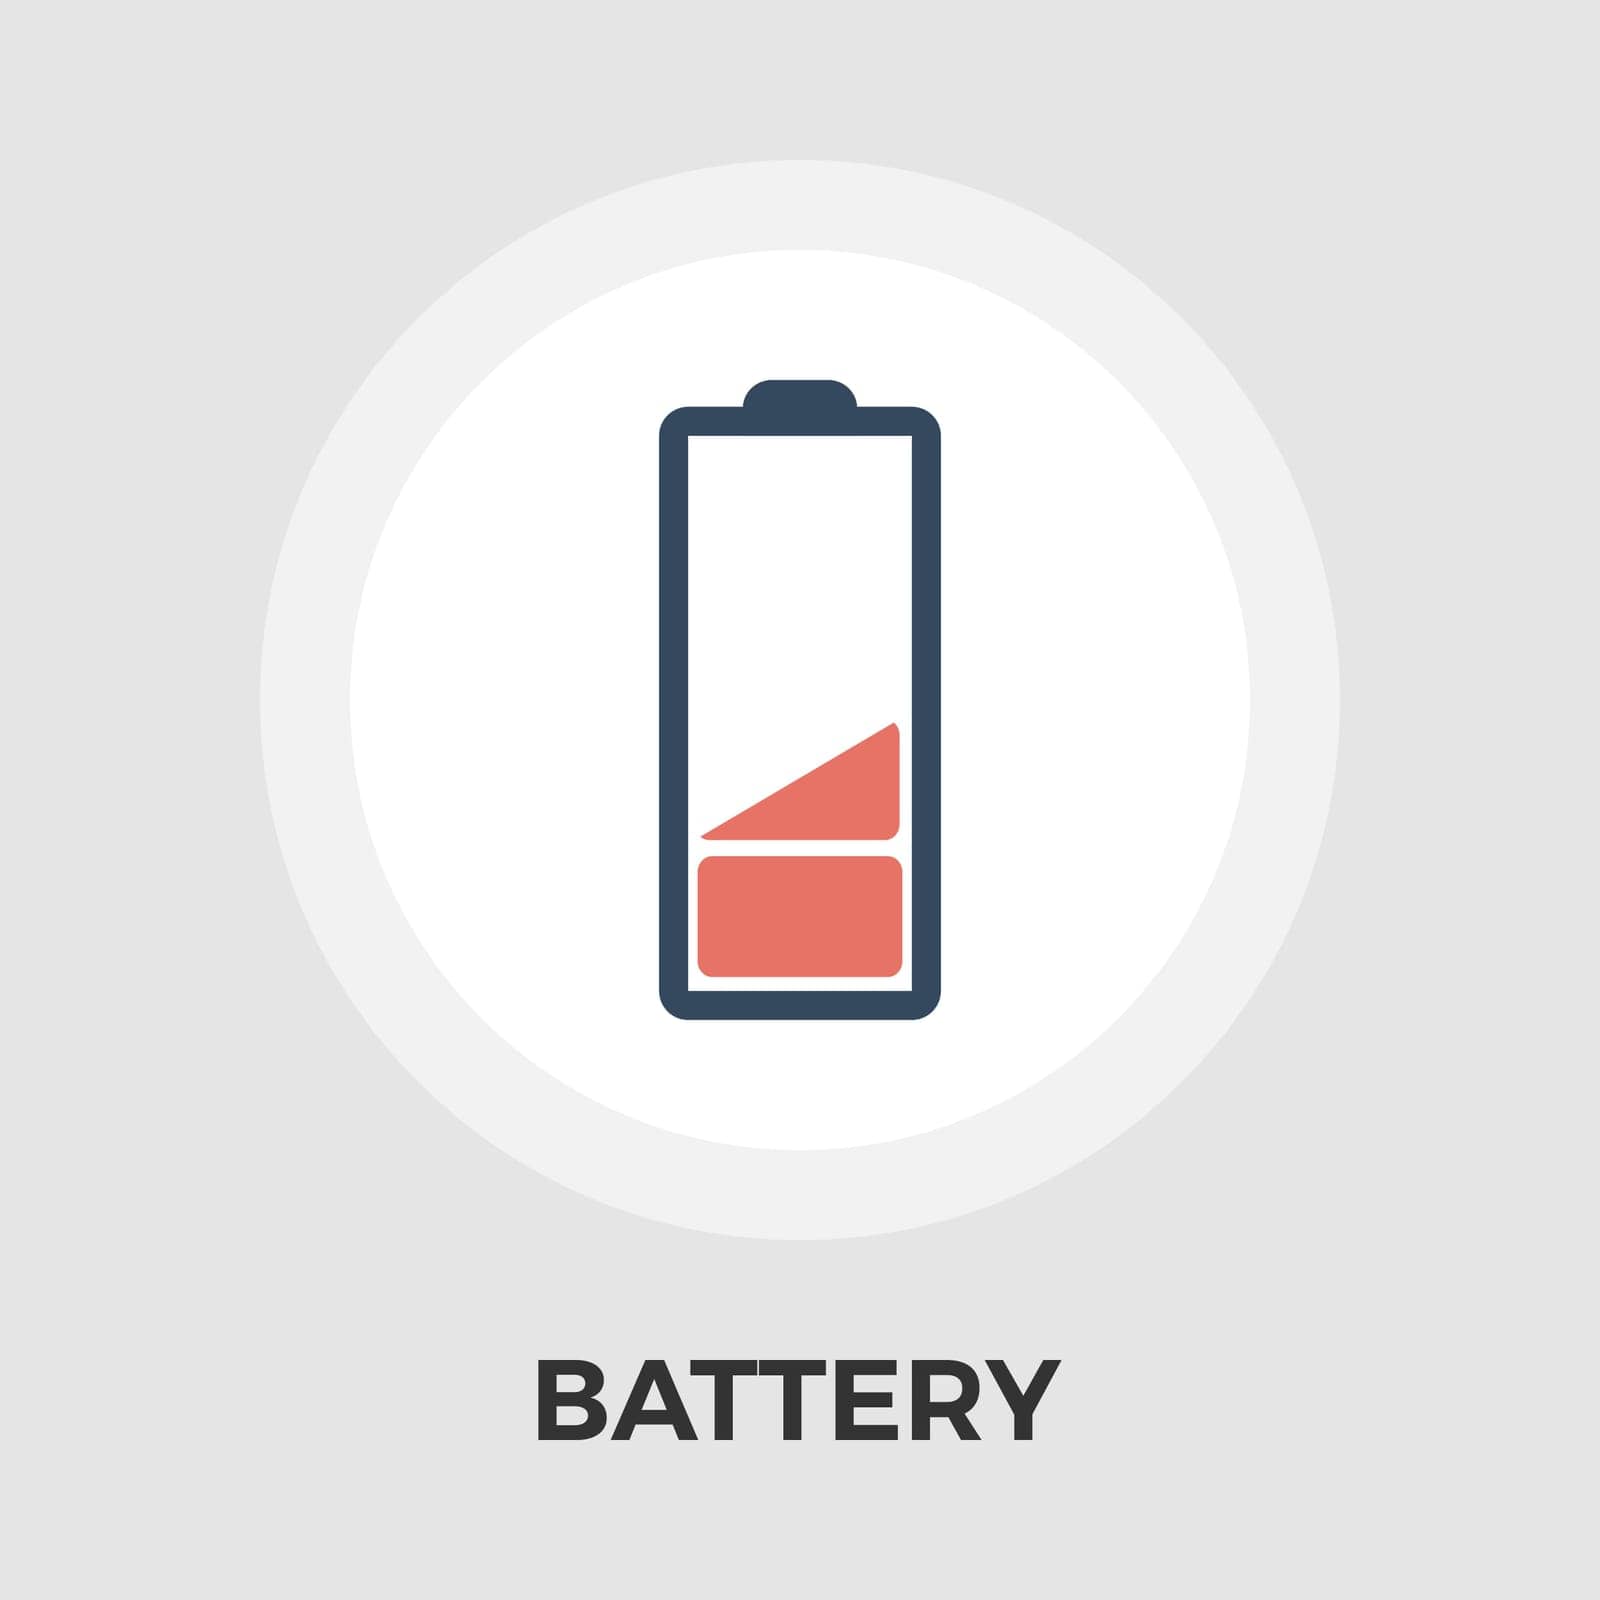 Battery Flat Icon by smoki